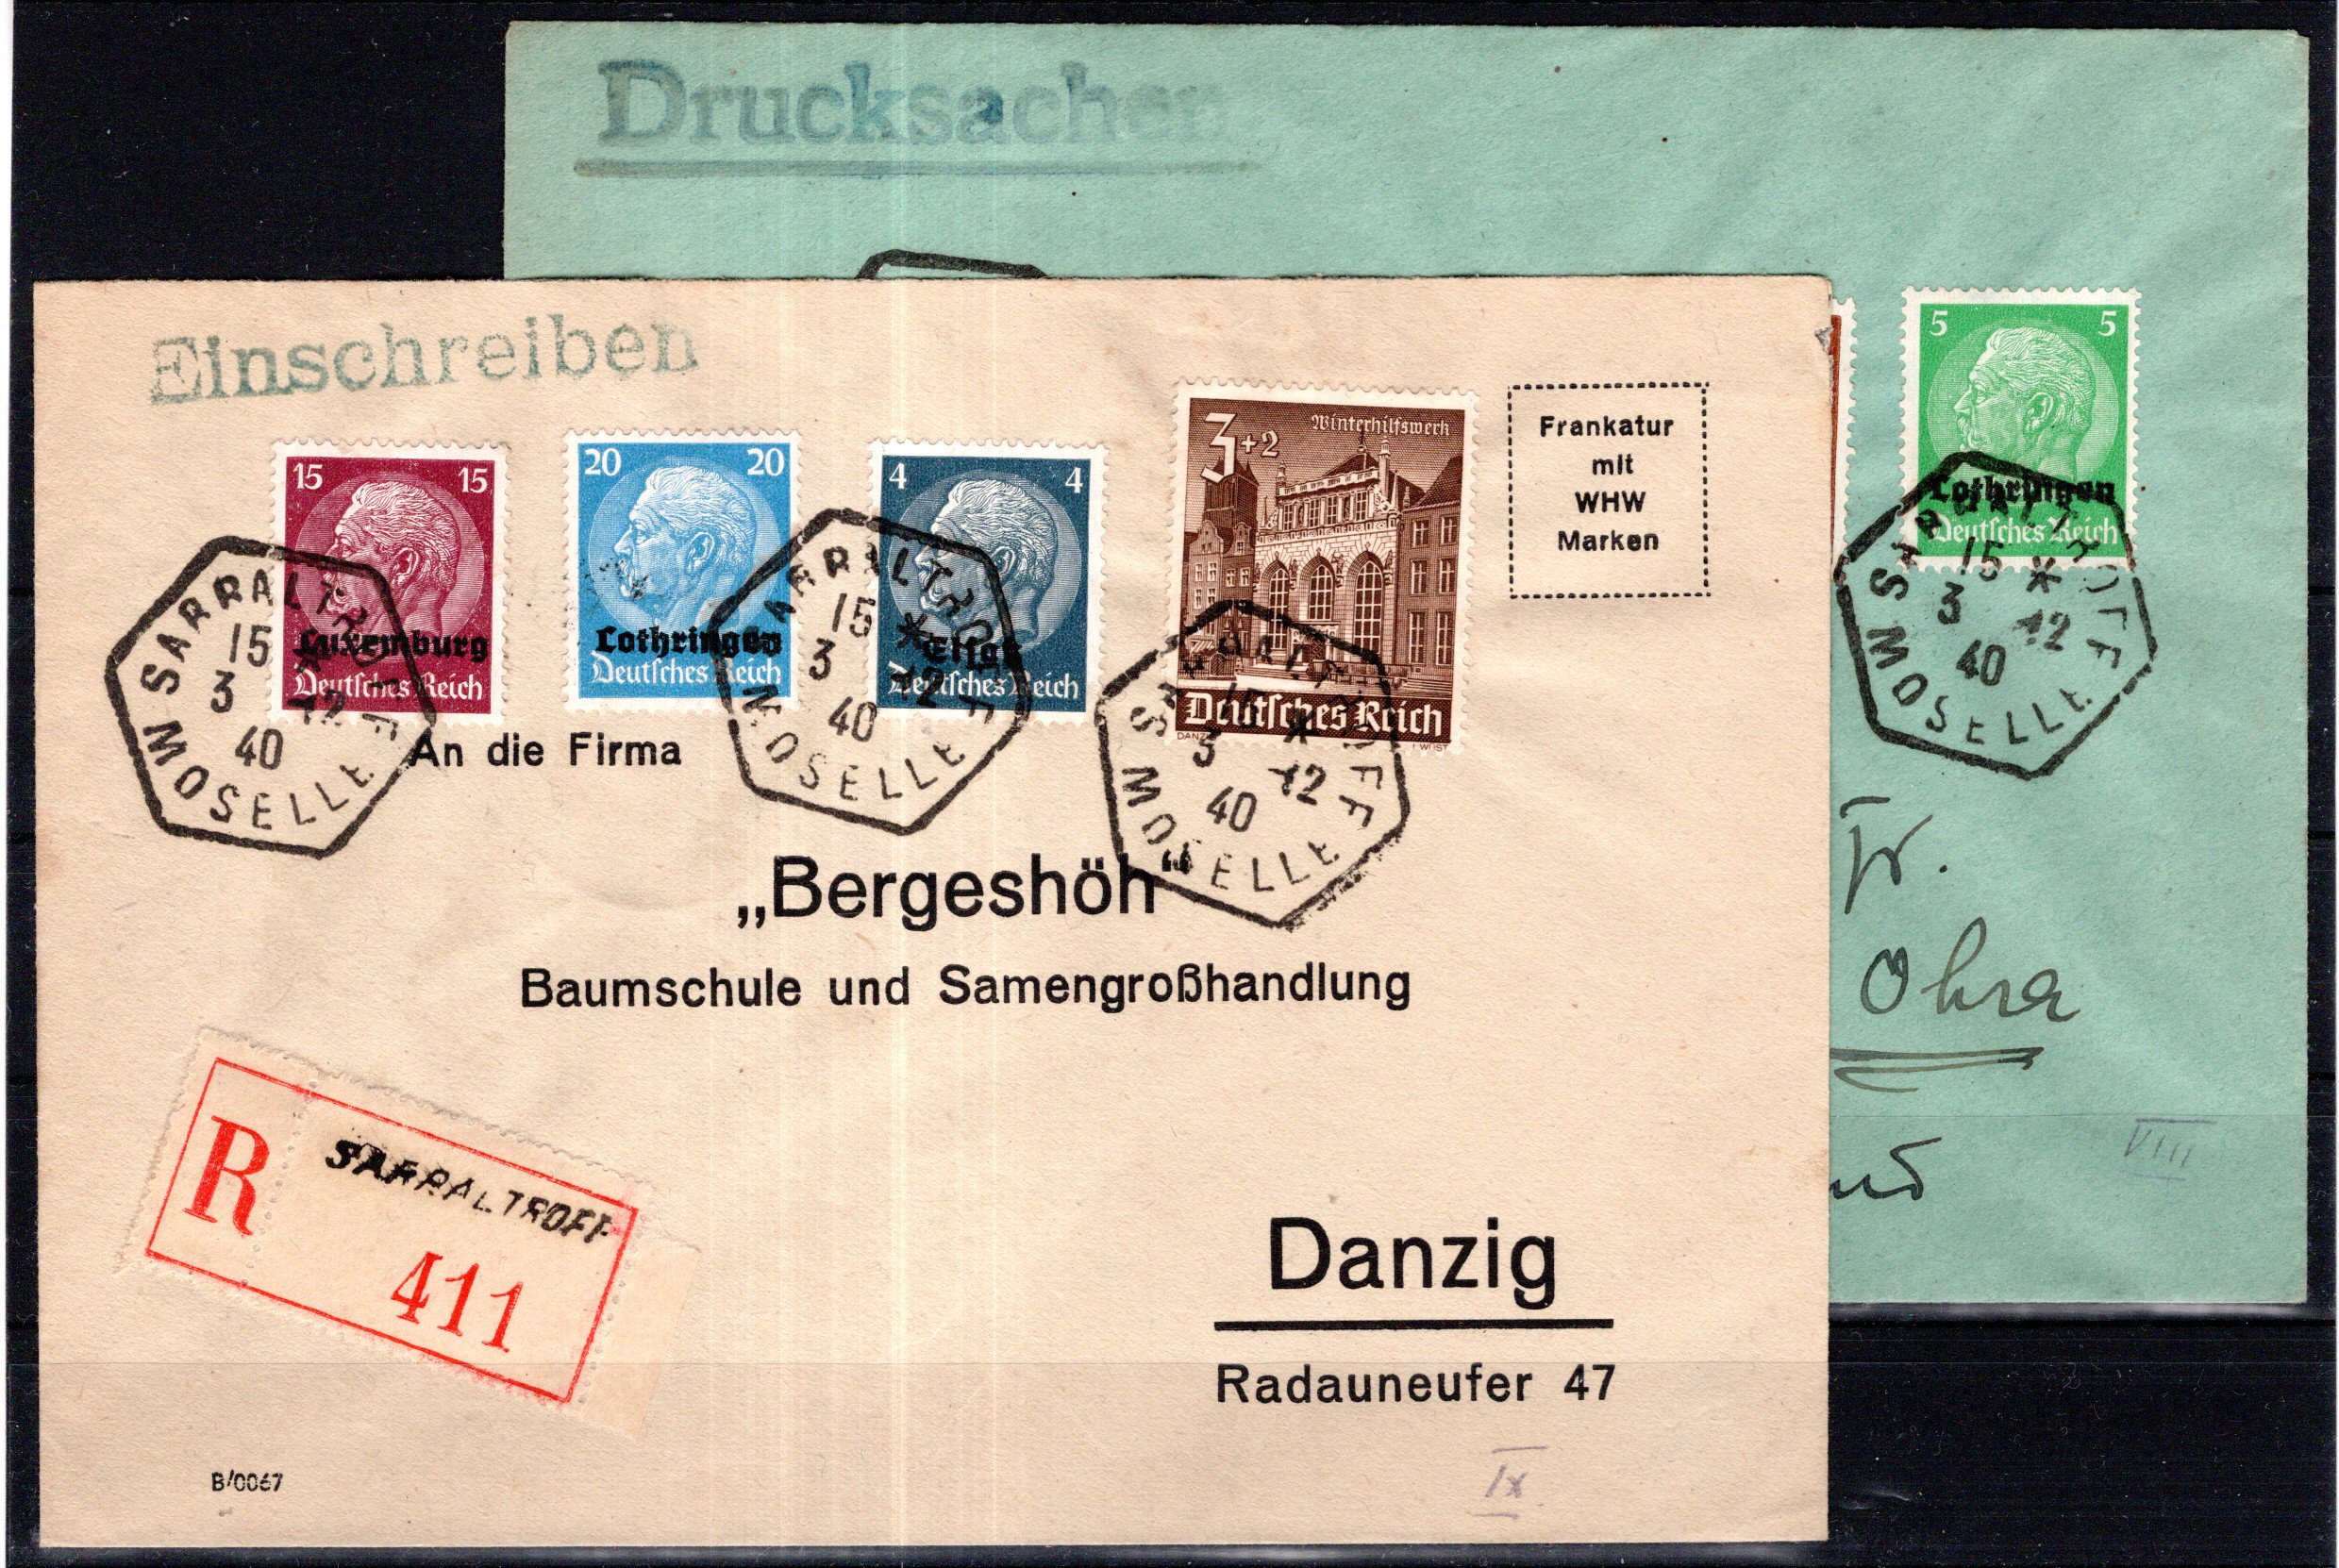 Lot 1652 - Switzerland Switzerland postage stamps -  Georg Bühler Briefmarken Auktionen GmbH Georg Bühler 336 auction